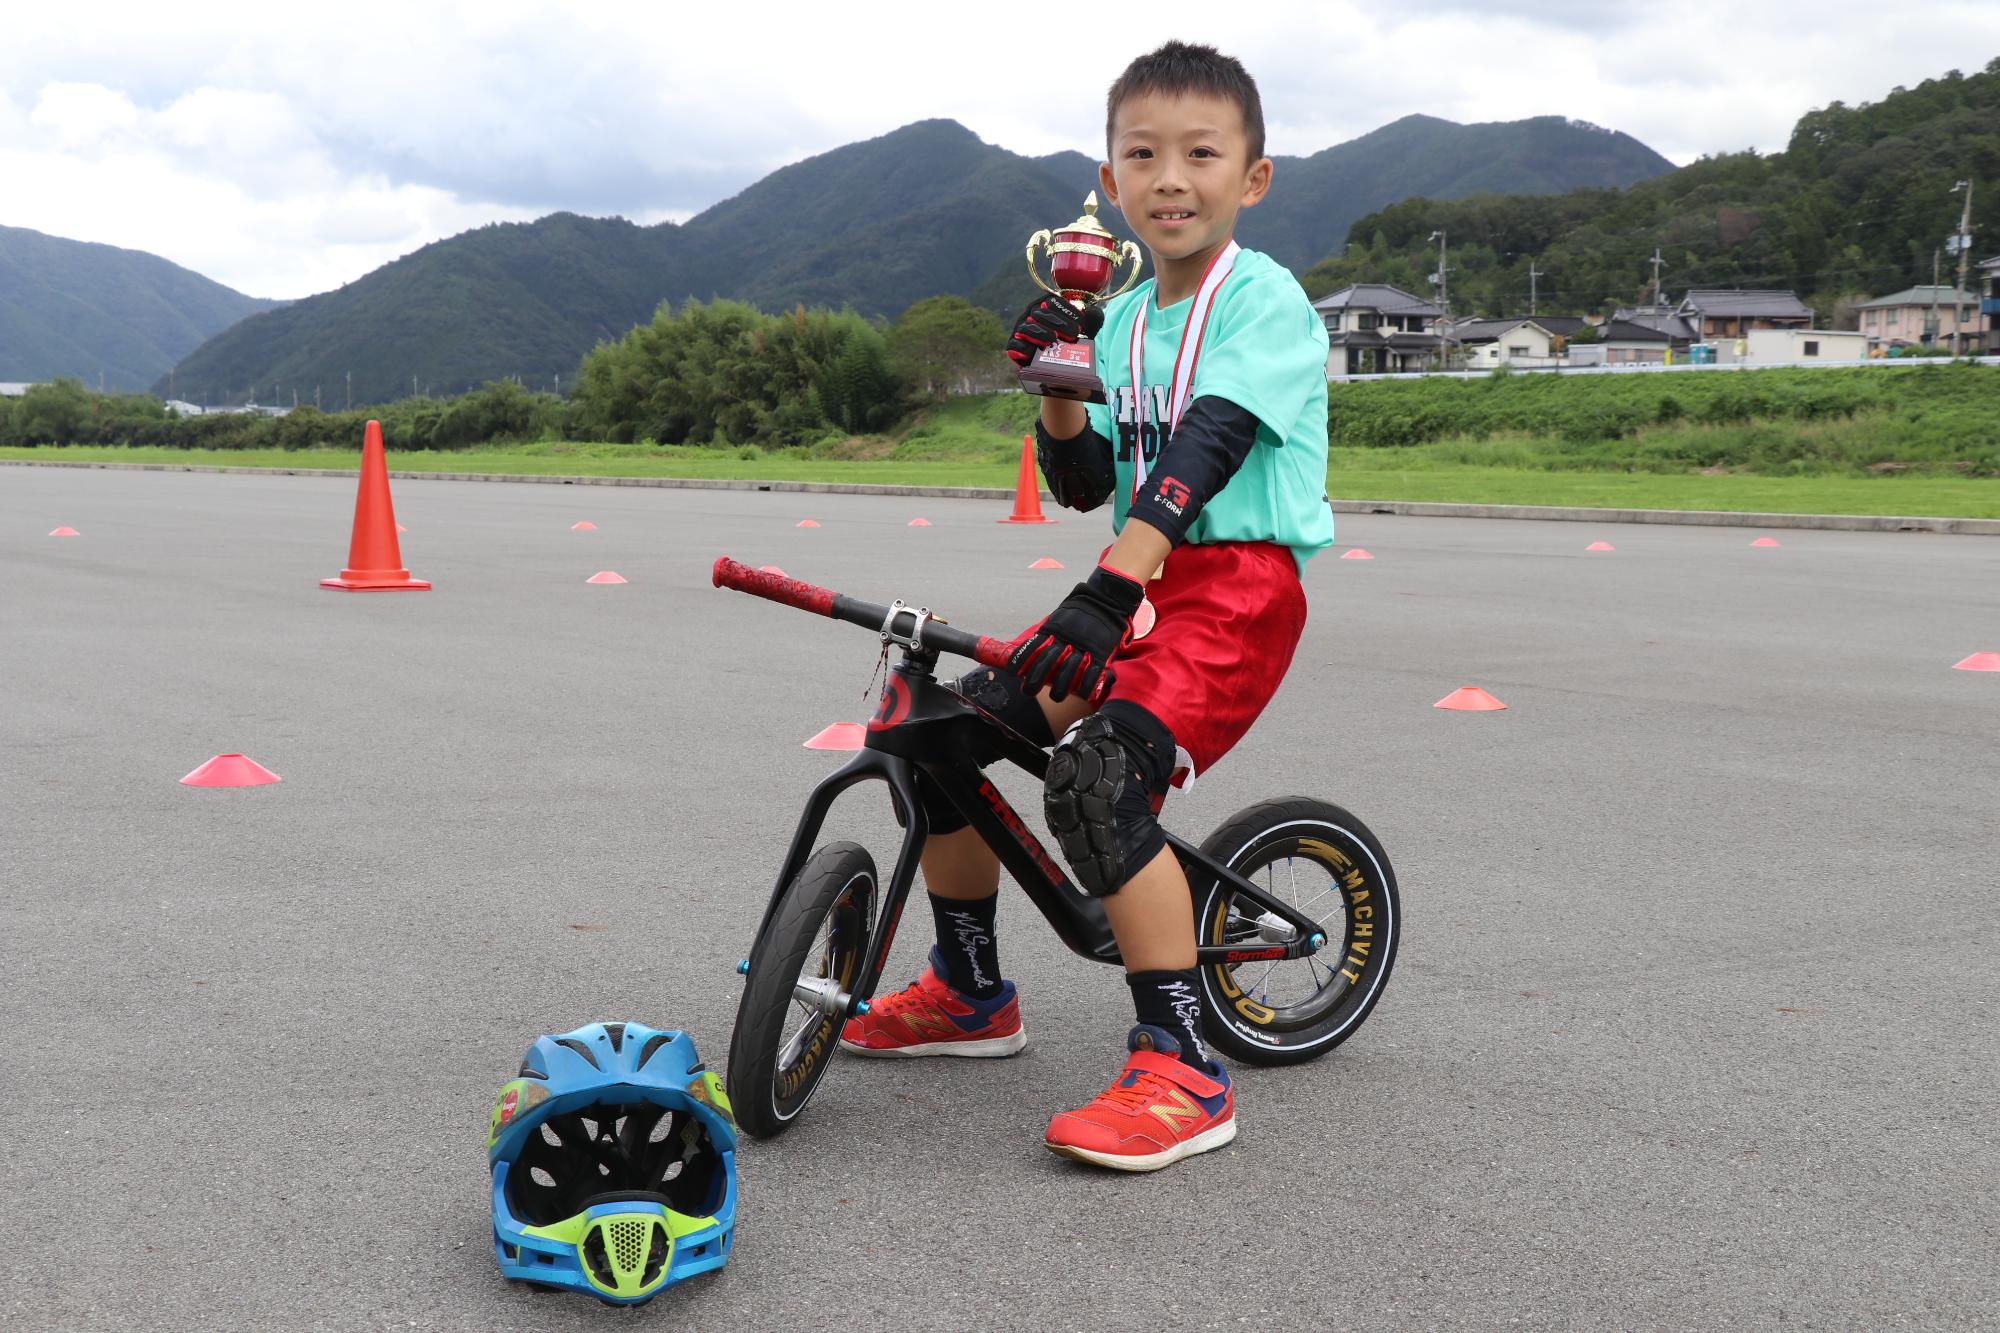 せせらぎ公園で植田さんがランバイクにまたがり、3位入賞記念のカップを持っている写真